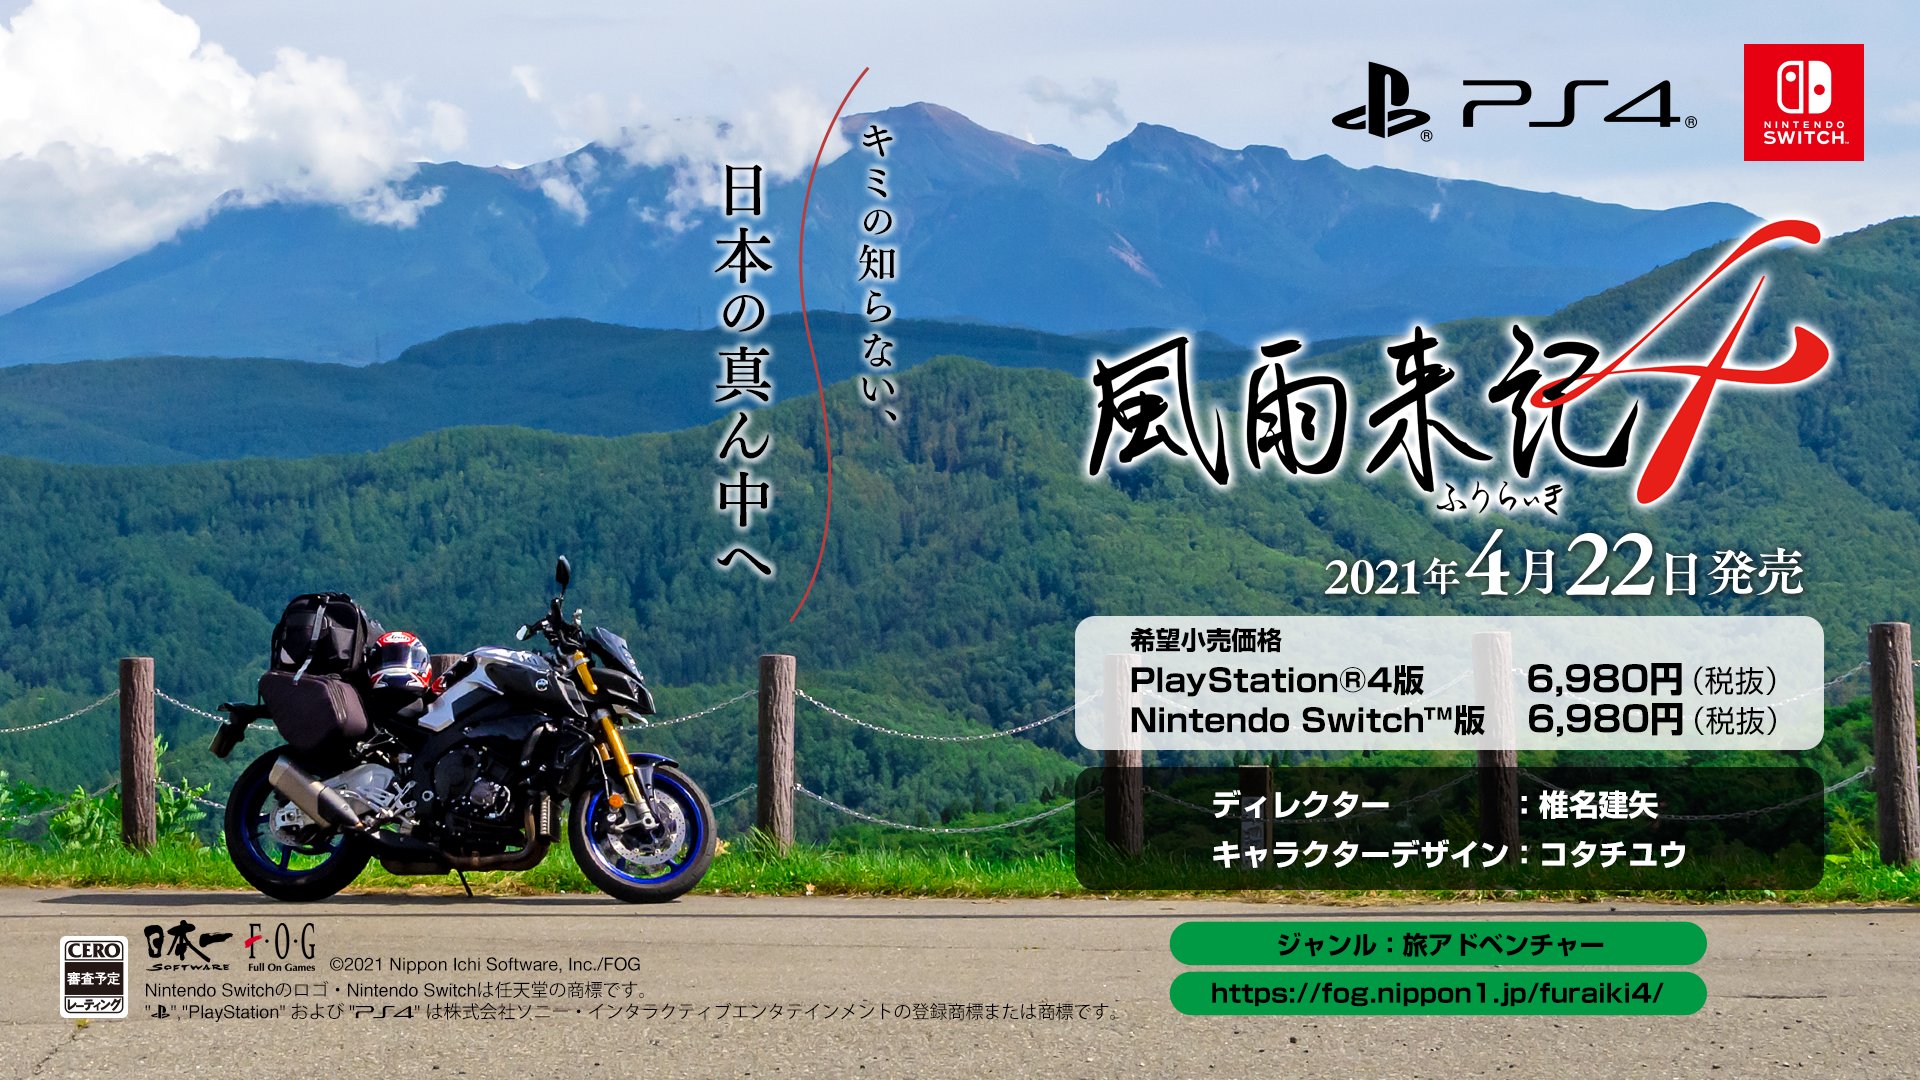 最新作の舞台は日本の真ん中 岐阜県 Ps4 Switch用 風雨来記4 が21年4月22日に発売決定 Game Watch